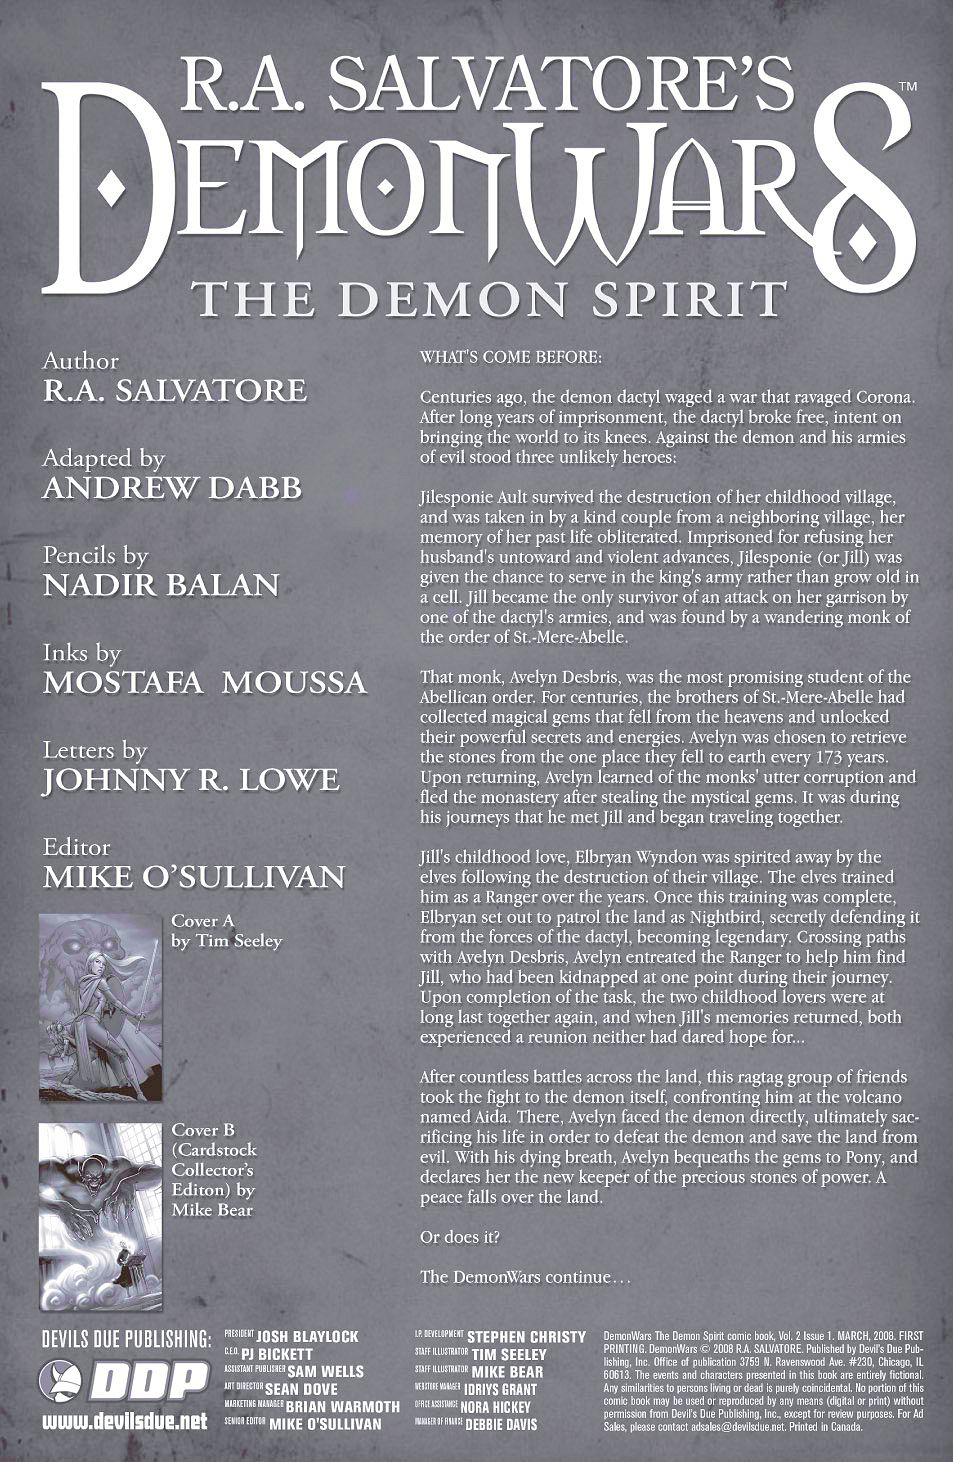 Read online DemonWars: The Demon Spirit comic -  Issue #1 - 2